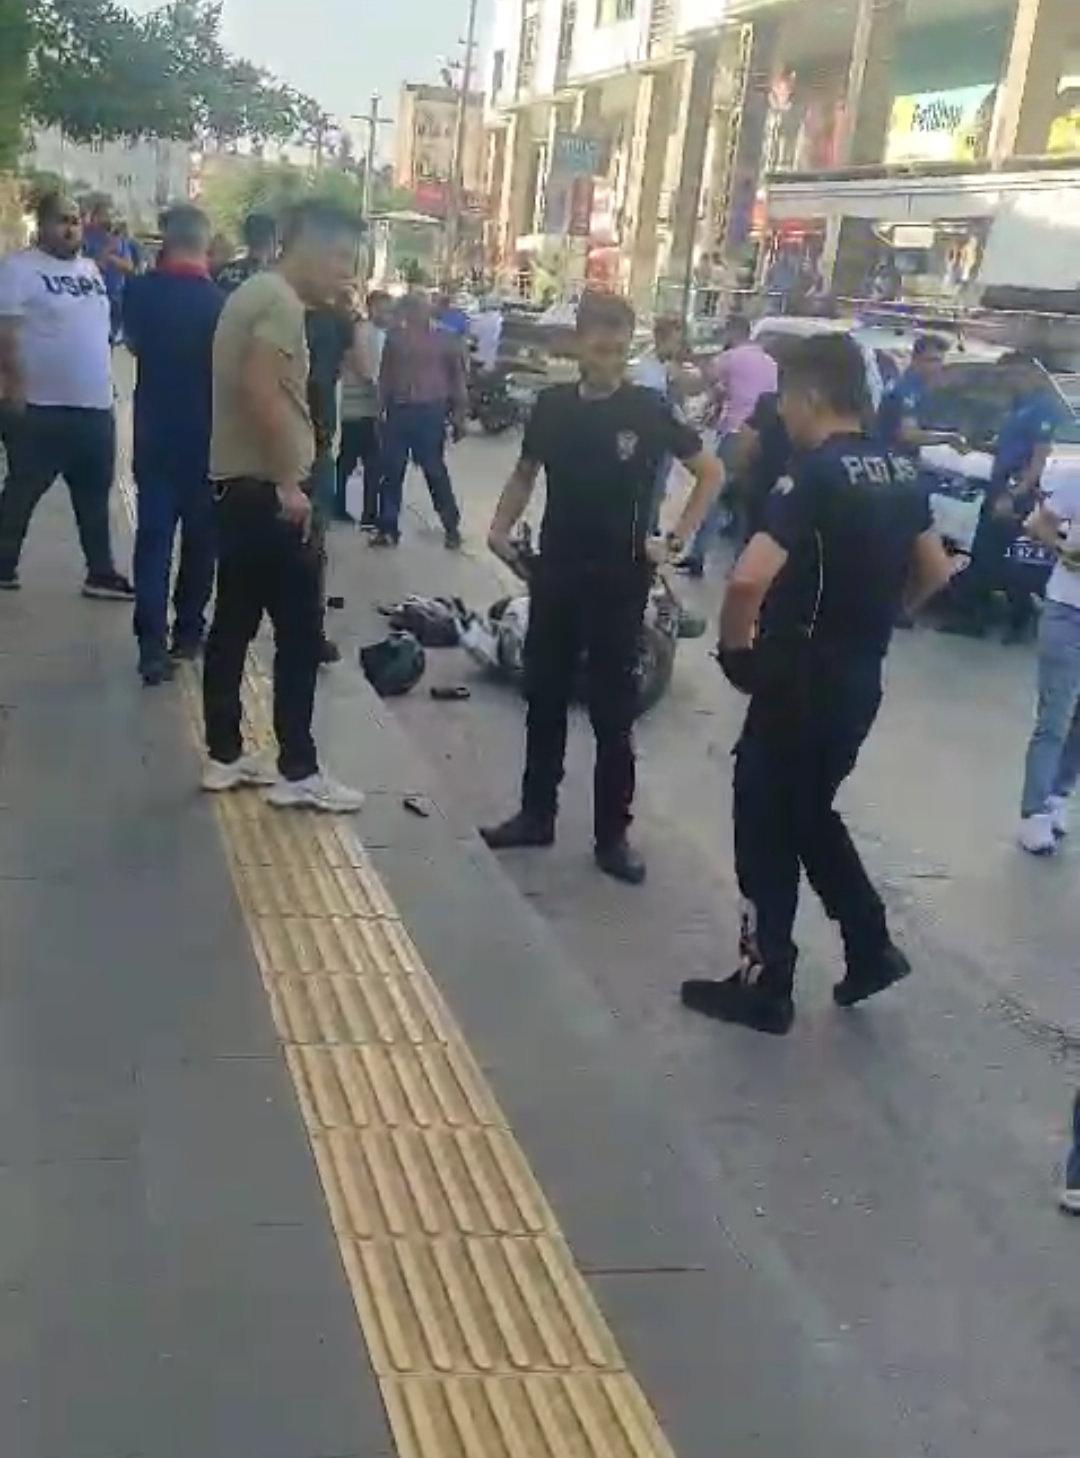 Mardin'de silahlı kavga: Bir kişi yaralandı